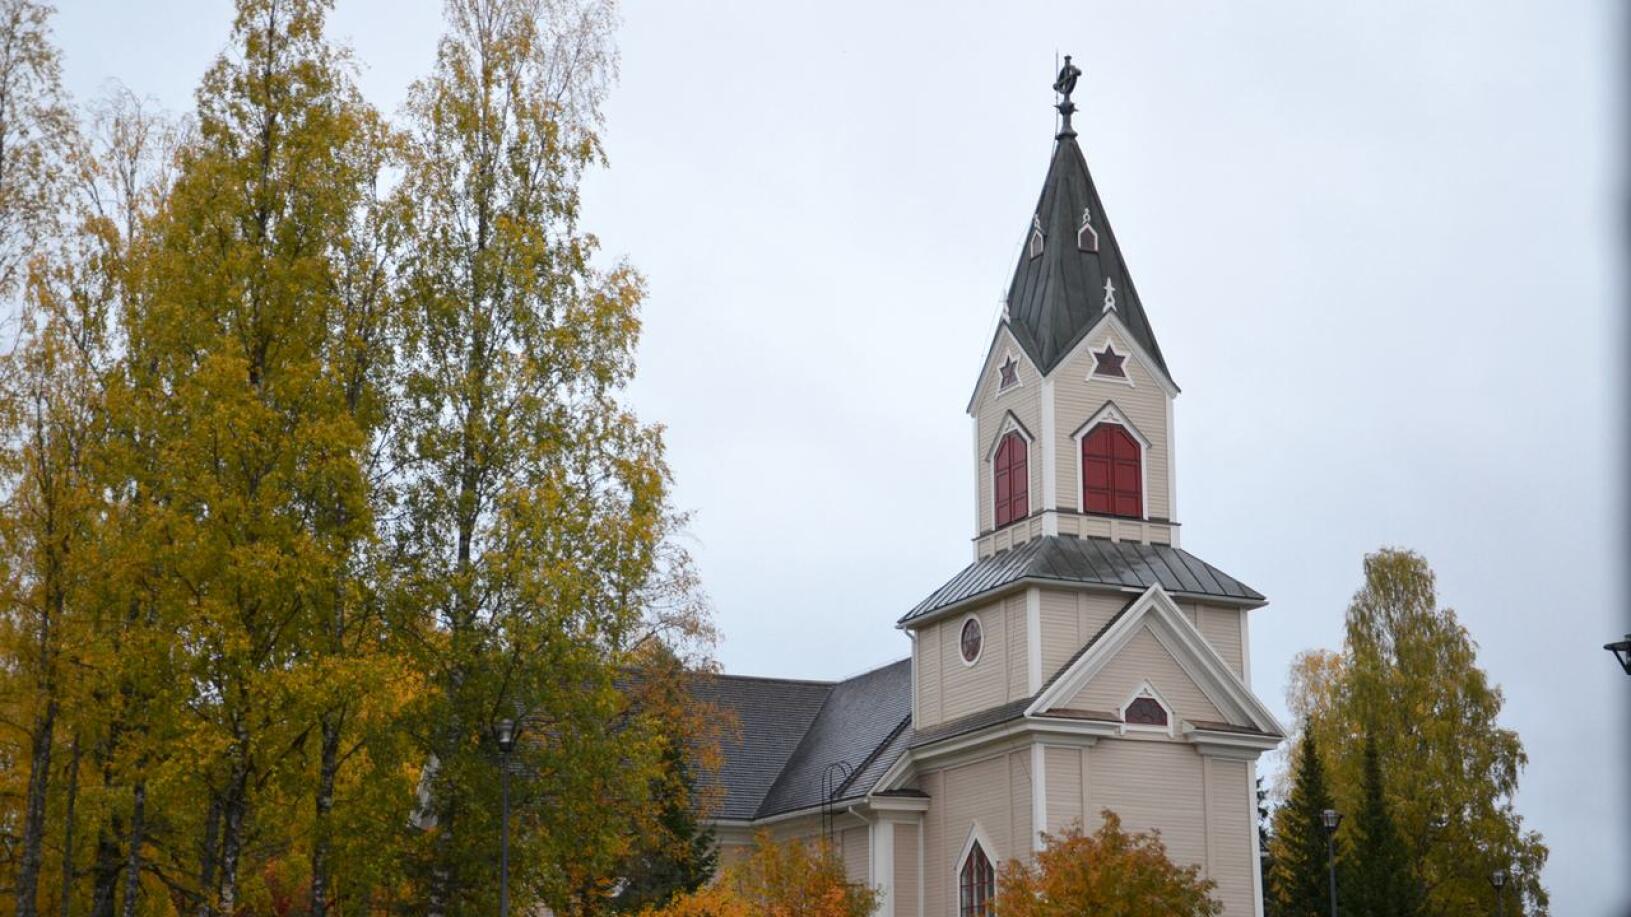 Seurakunnan luottamushenkilöt päättävät esimerkiksi kiinteistöjen huollosta ja käytöstä. Toholammin seurakuntaan kuuluvan Lestijärven kirkko maalattiin ulkoa viime kesänä.